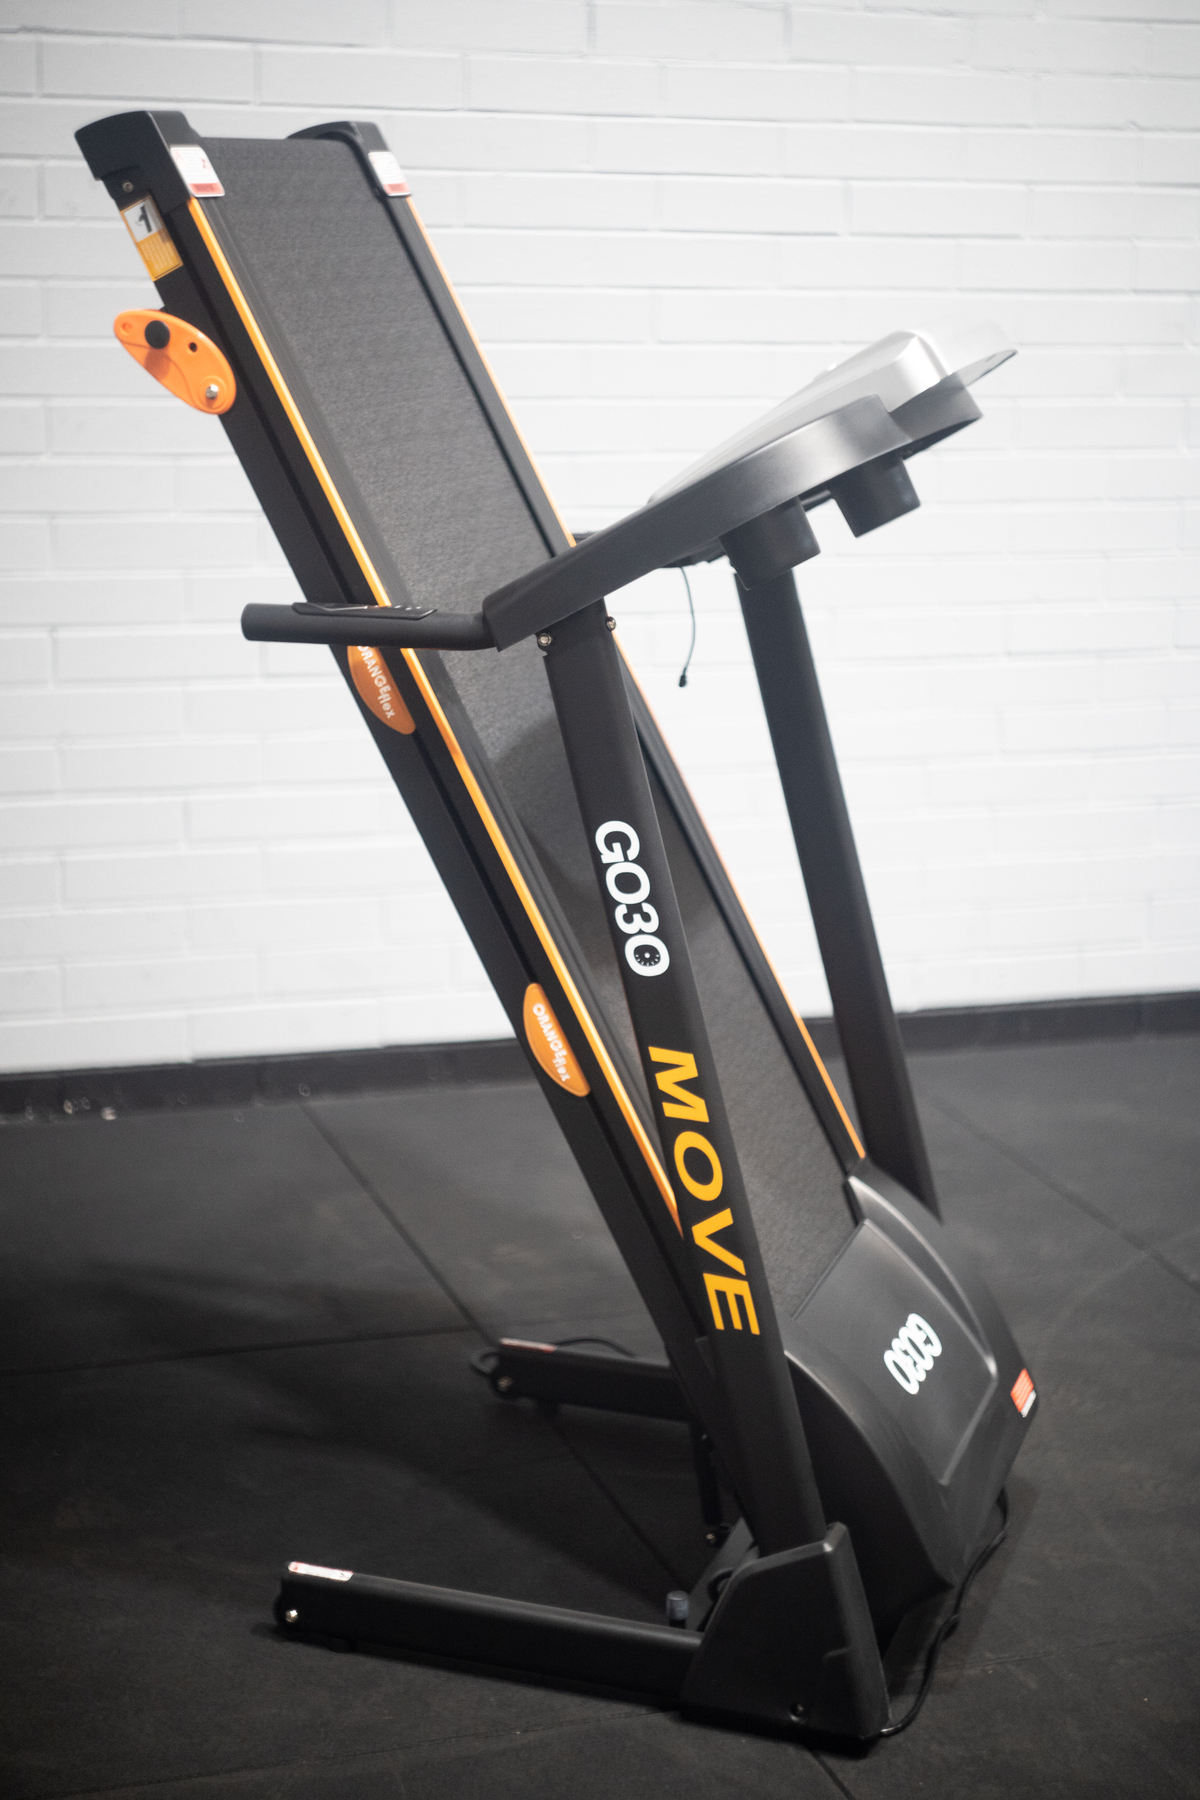 GO30 Compact Treadmill MOVE-100